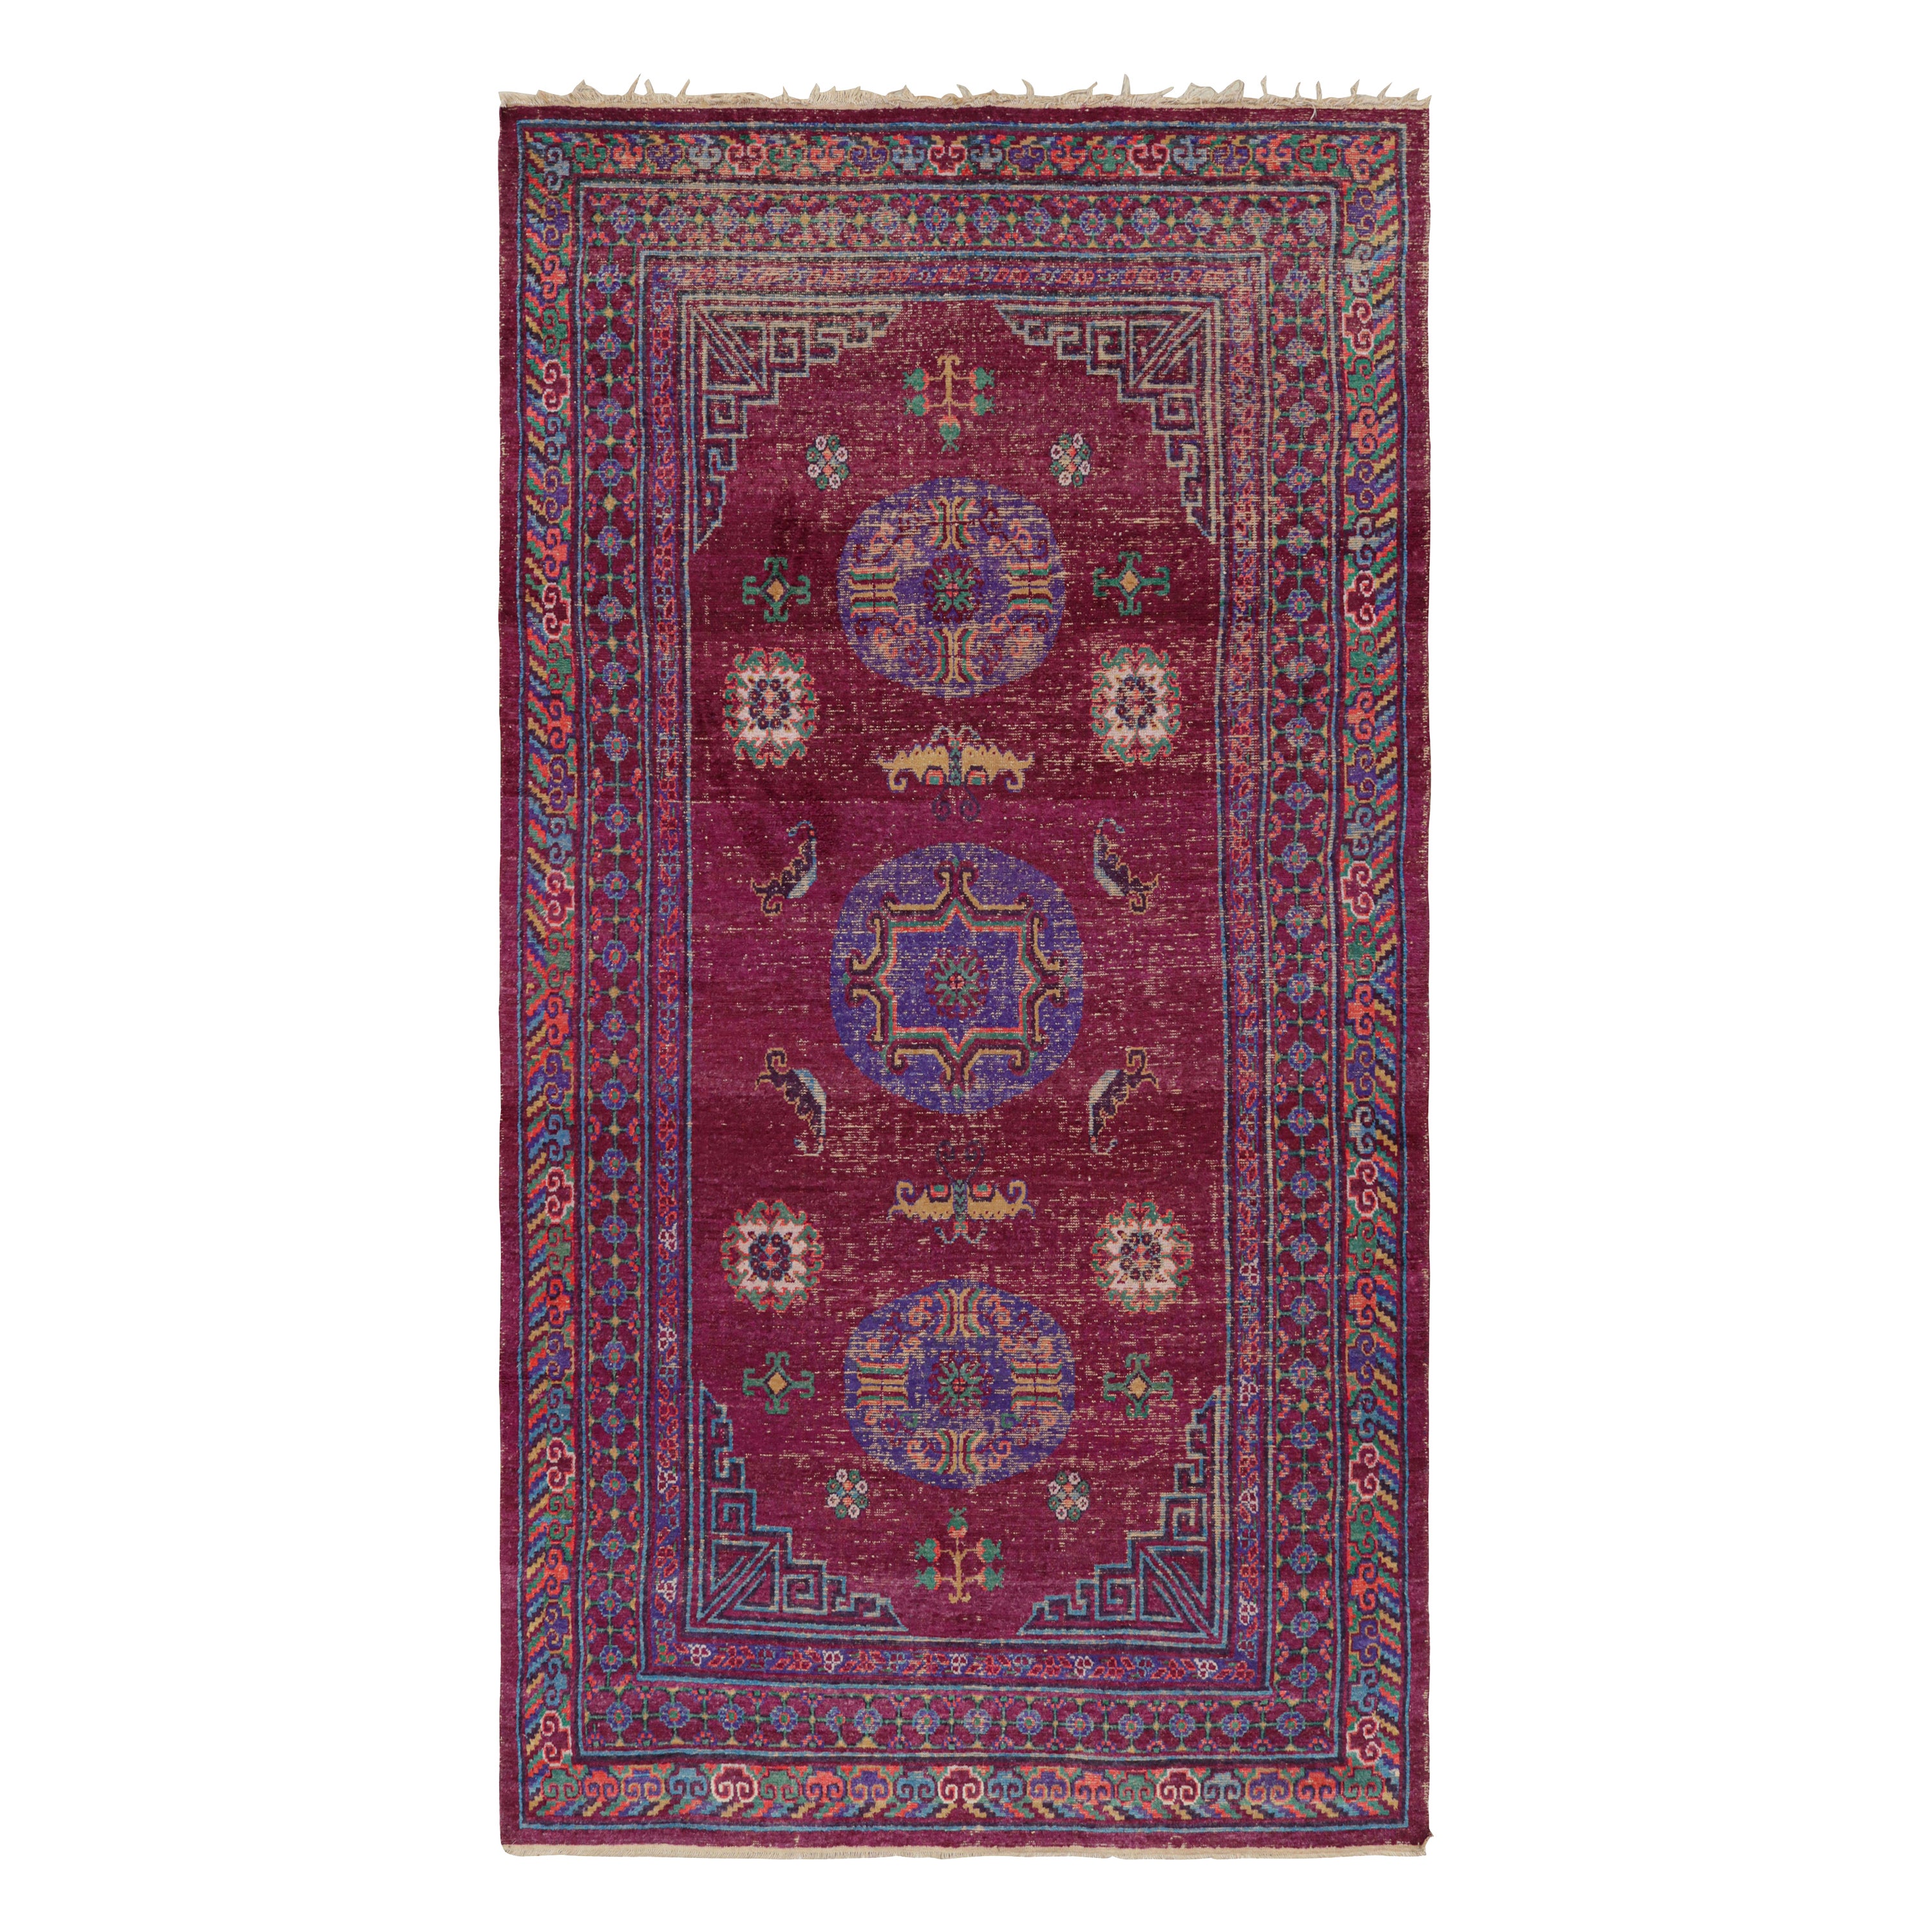 Khotan Rugs and Carpets